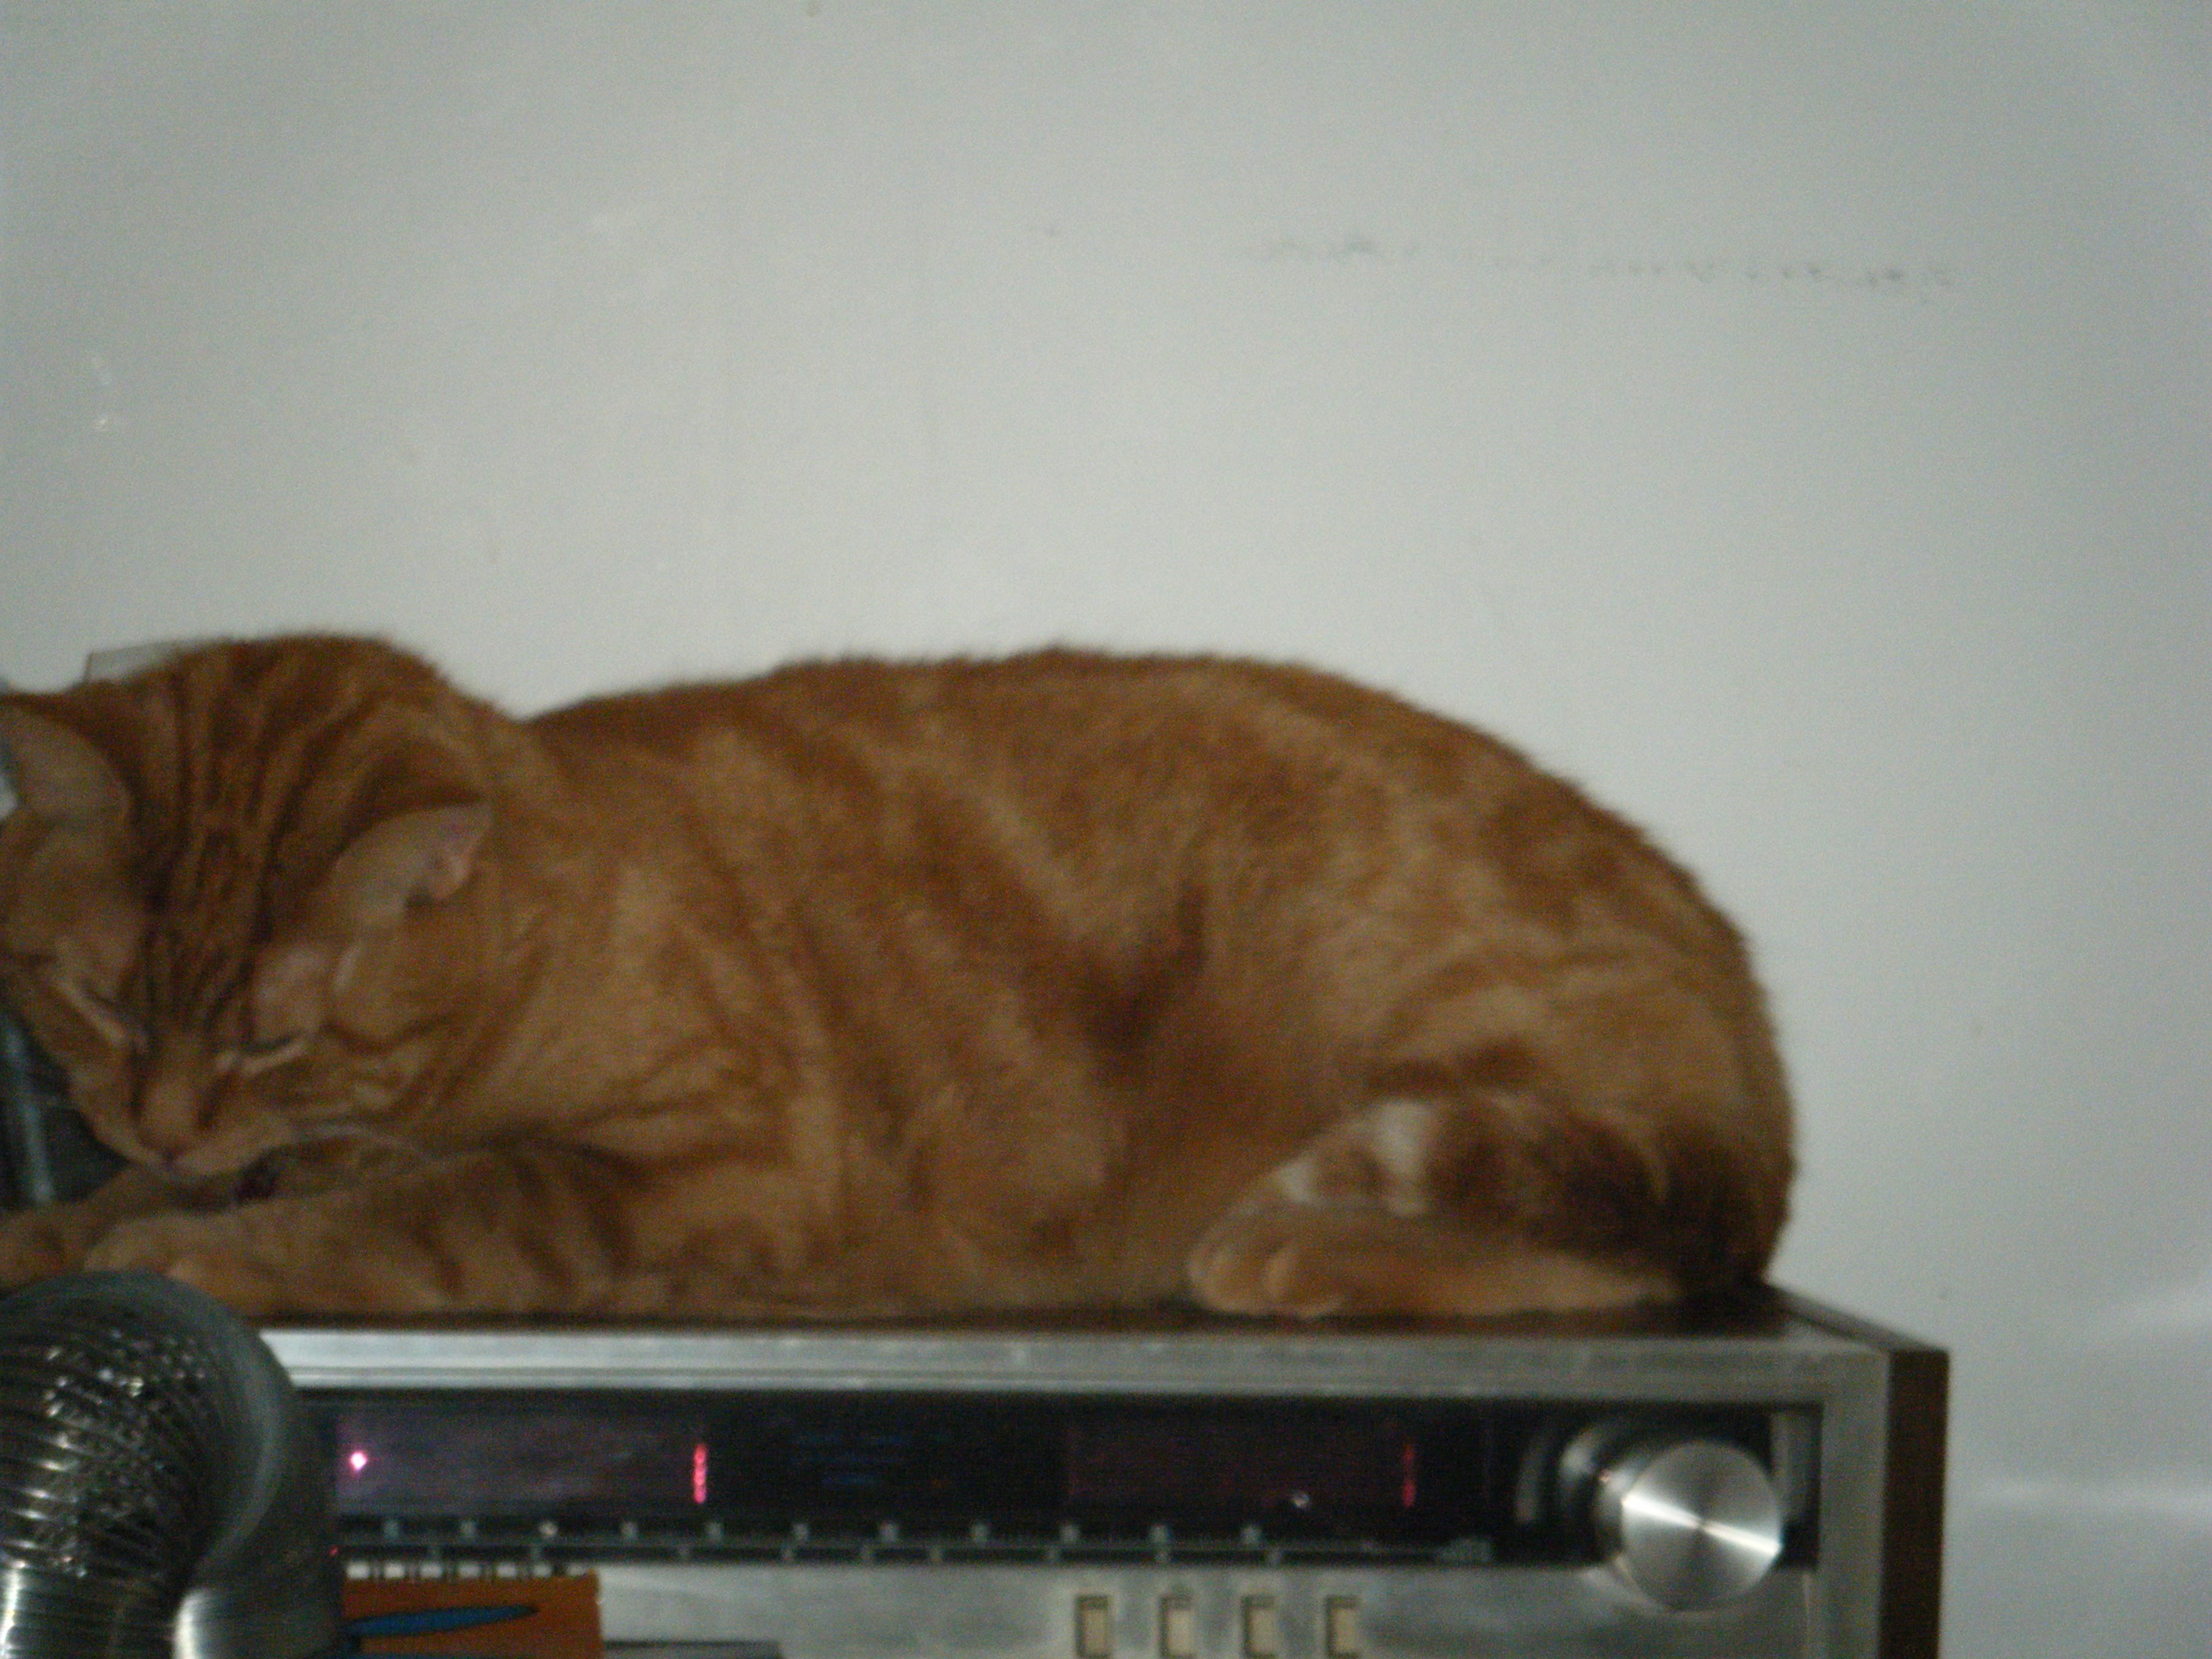 Clément le chat est couché sur la vieille radio en fonction, la tête un peu penché semblant concentré.